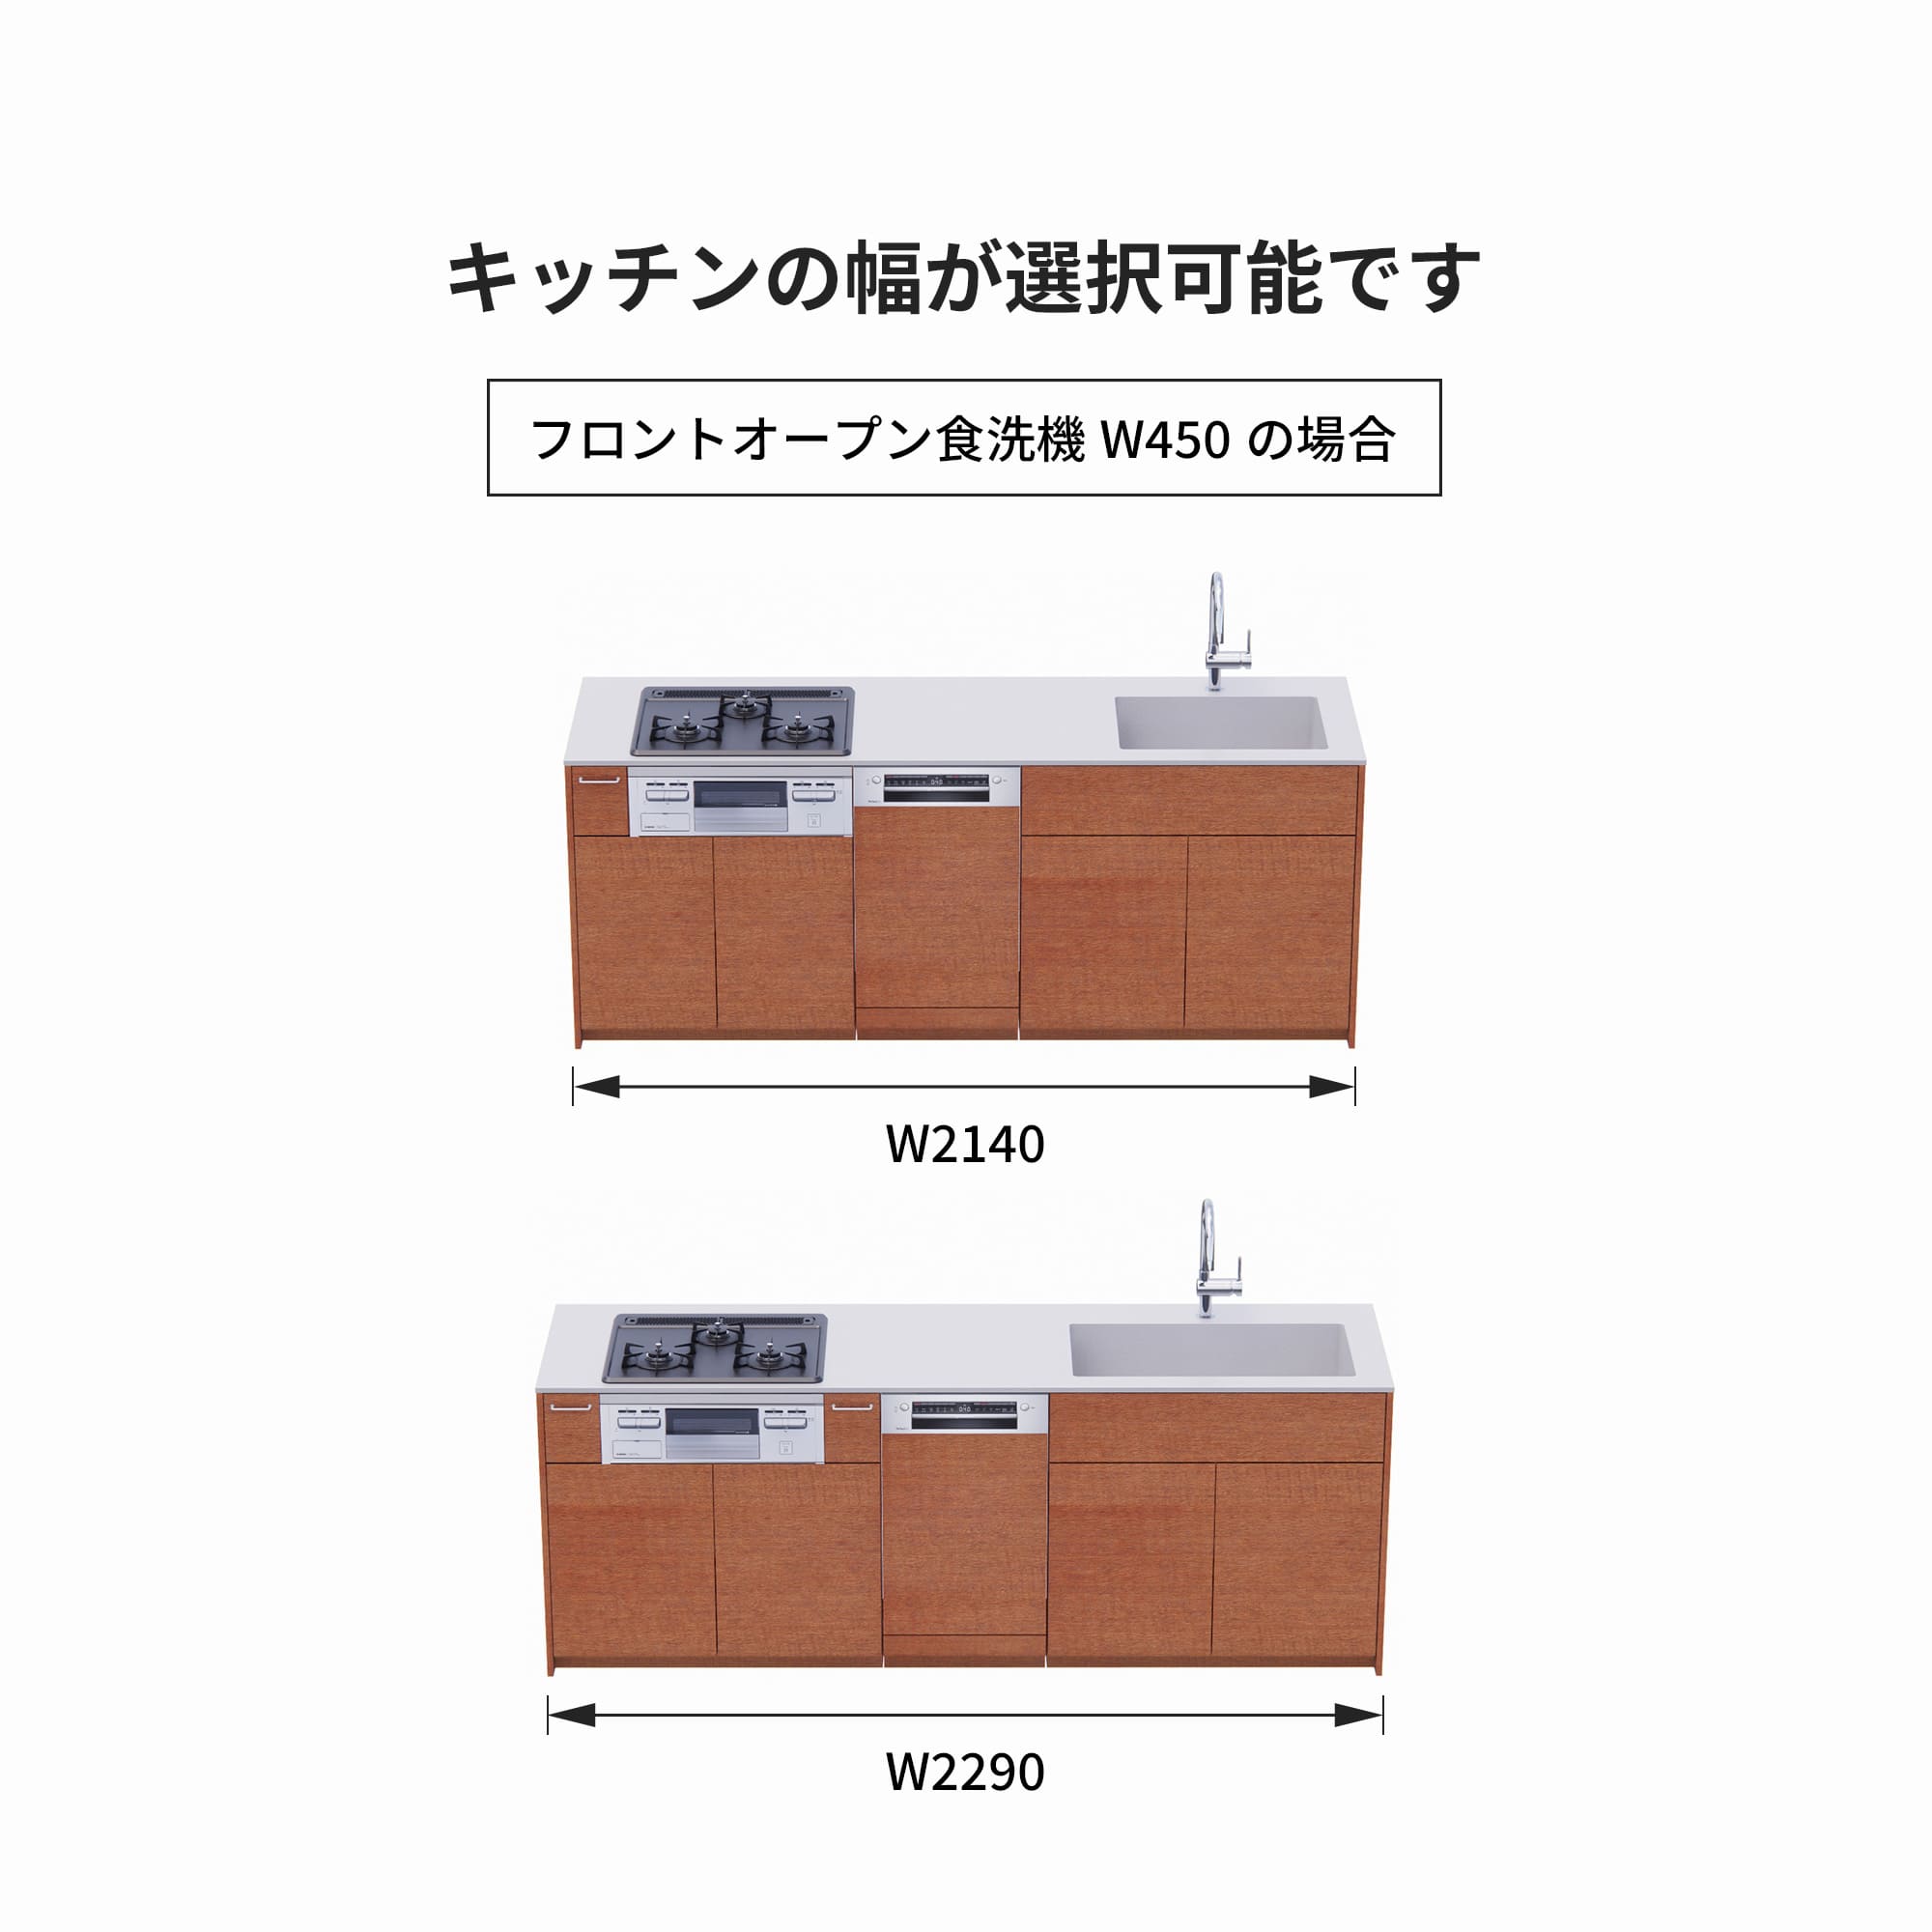 木製システムキッチン 対面型 W2140～2290・コンロあり / オーブンなし / 食洗機あり KB-KC022-38-G183 フロントオープン450の場合